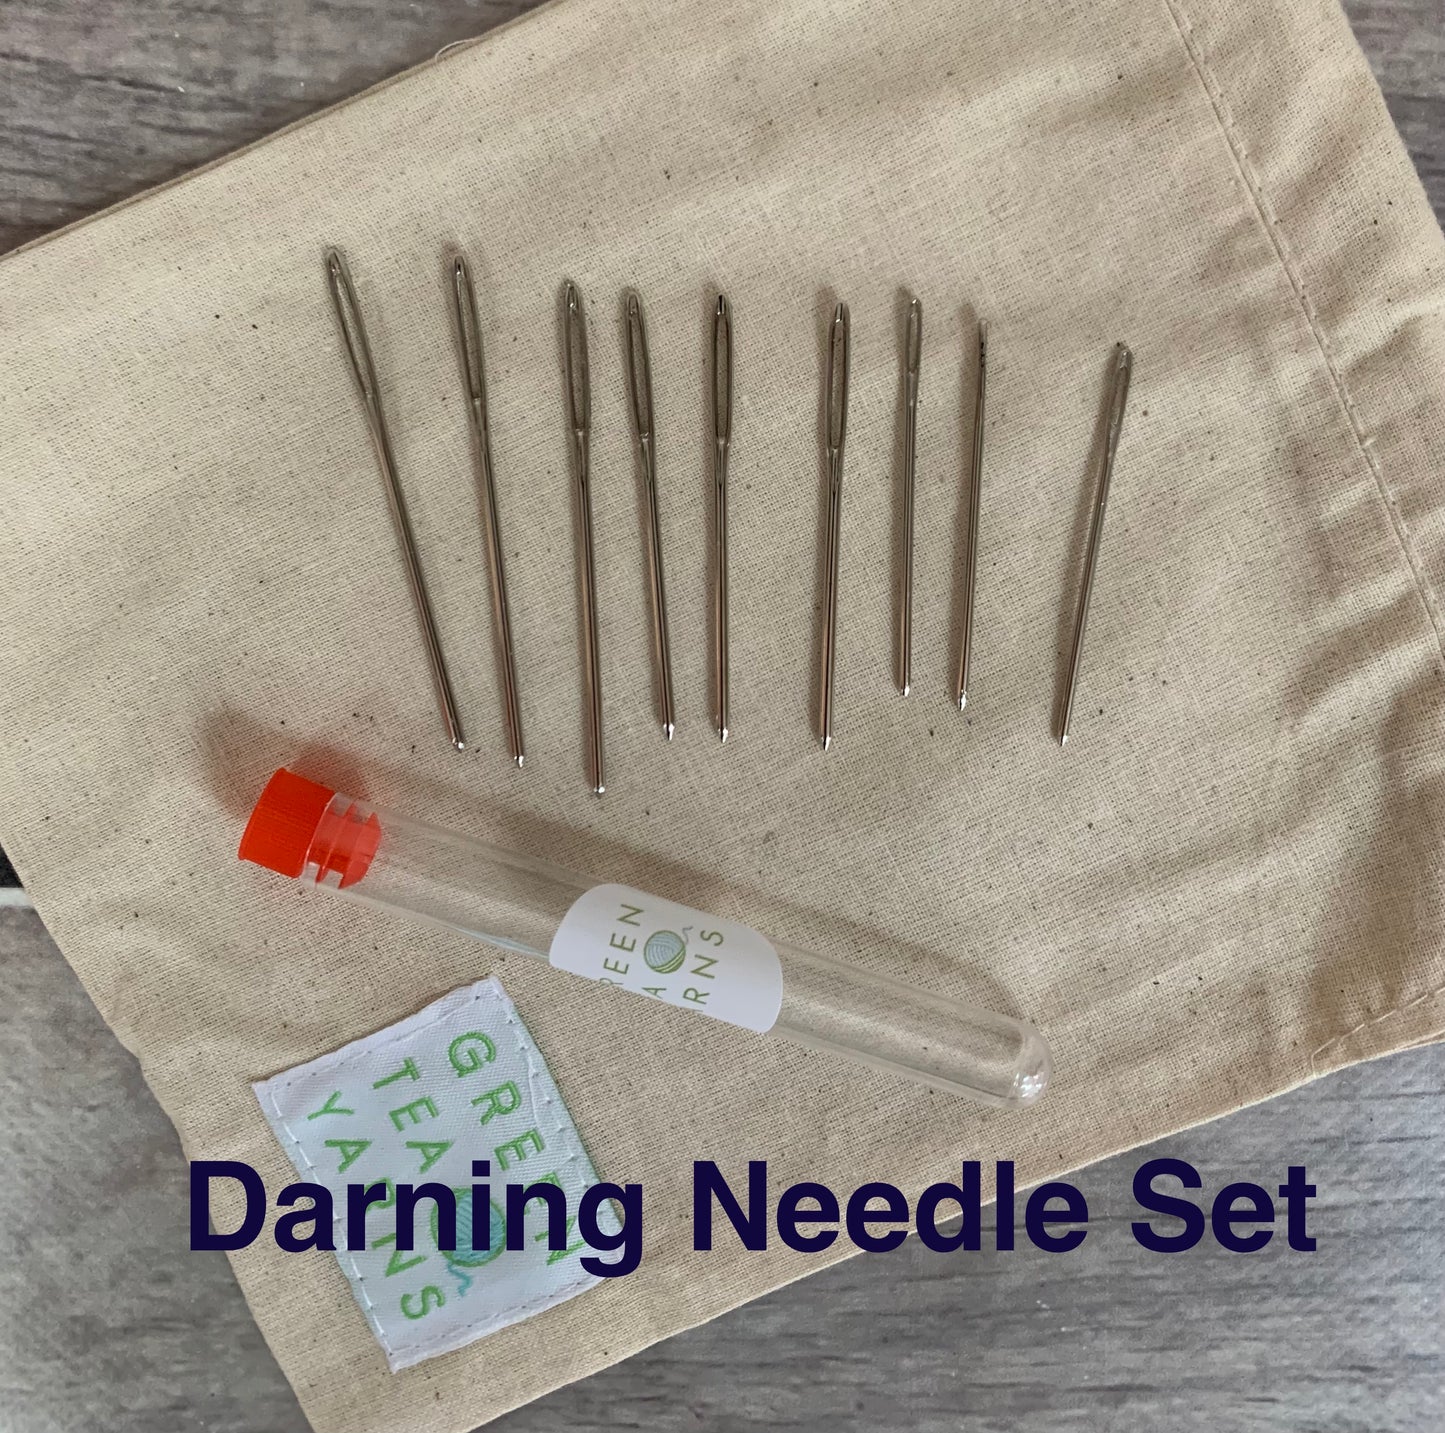 Darning Needle Set